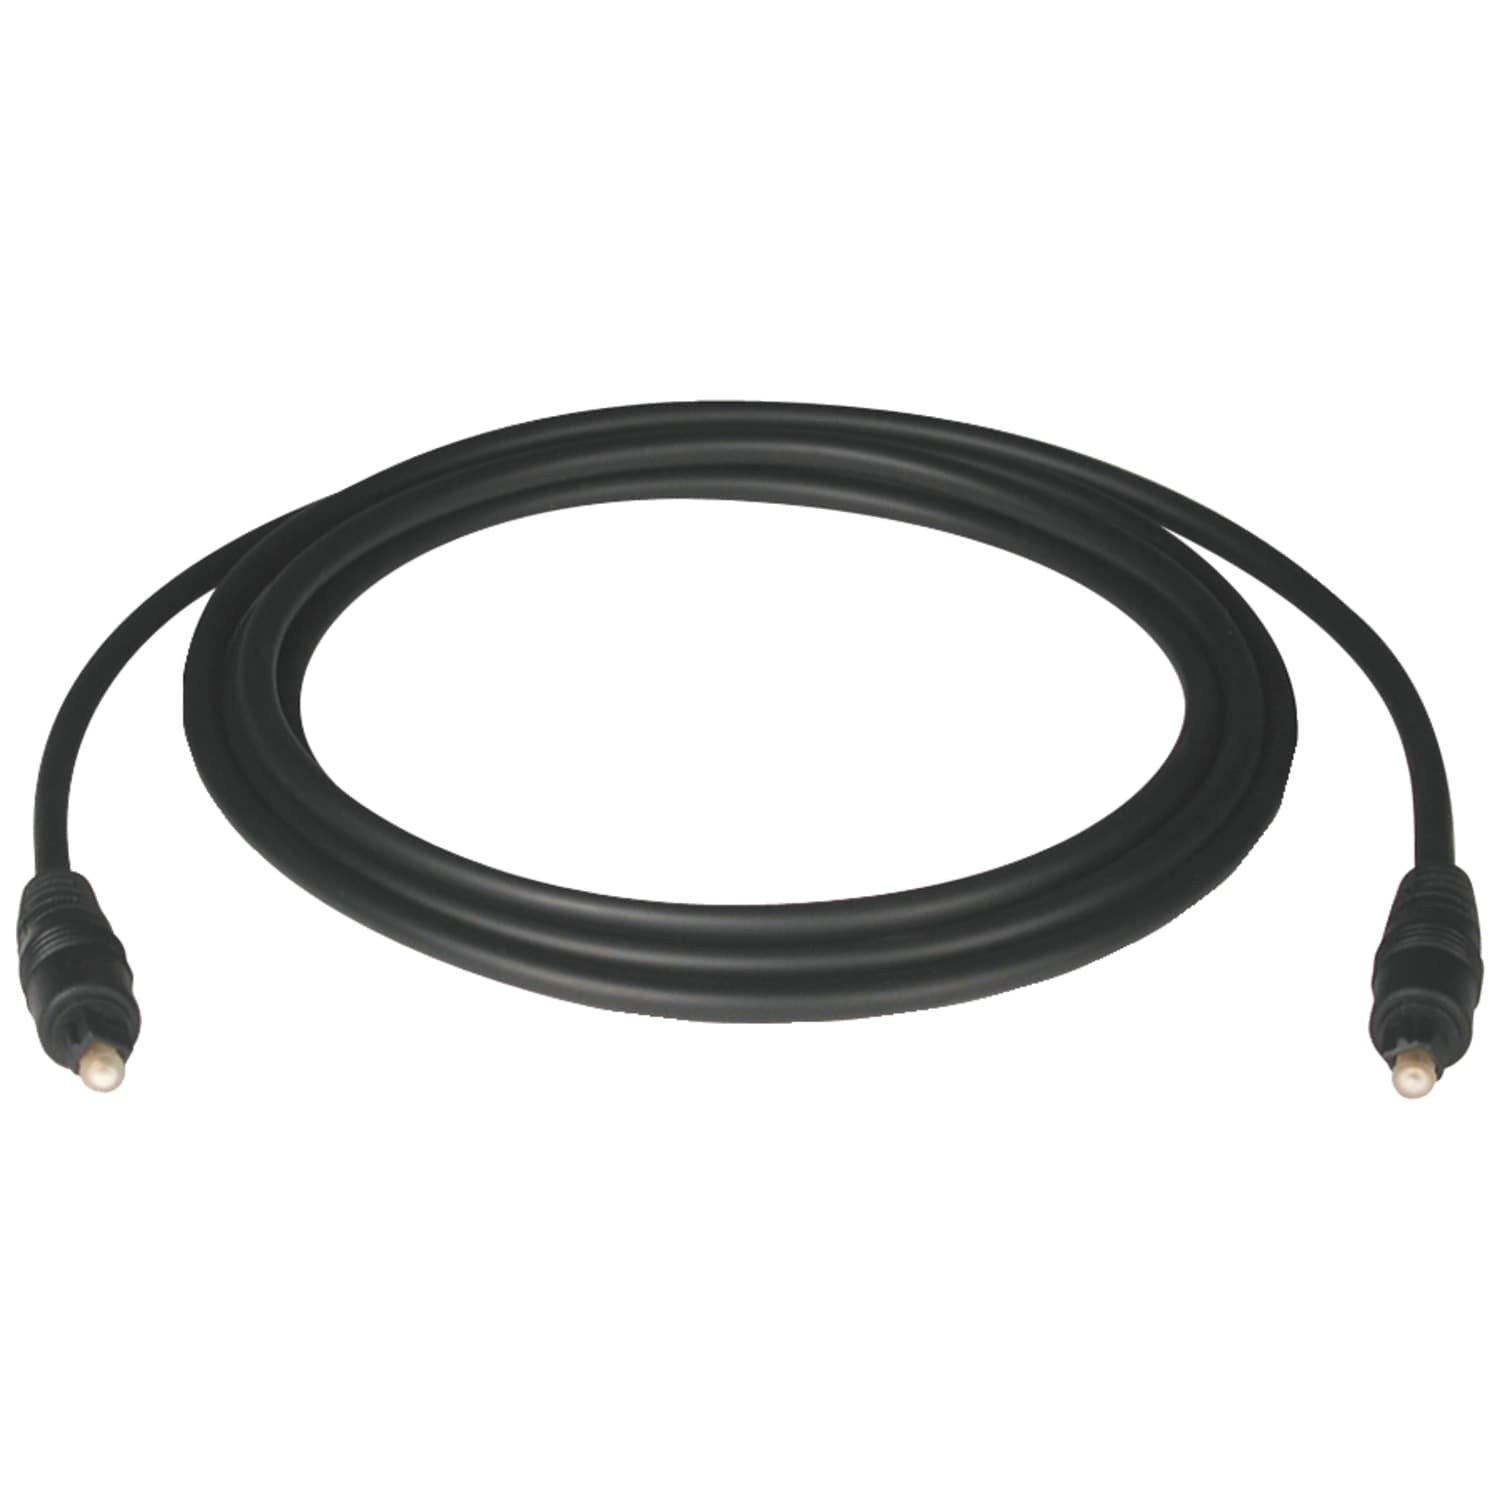 Tripp Lite 6-ft Audio Cable, Black, Copper Conductor, PVC Jacket